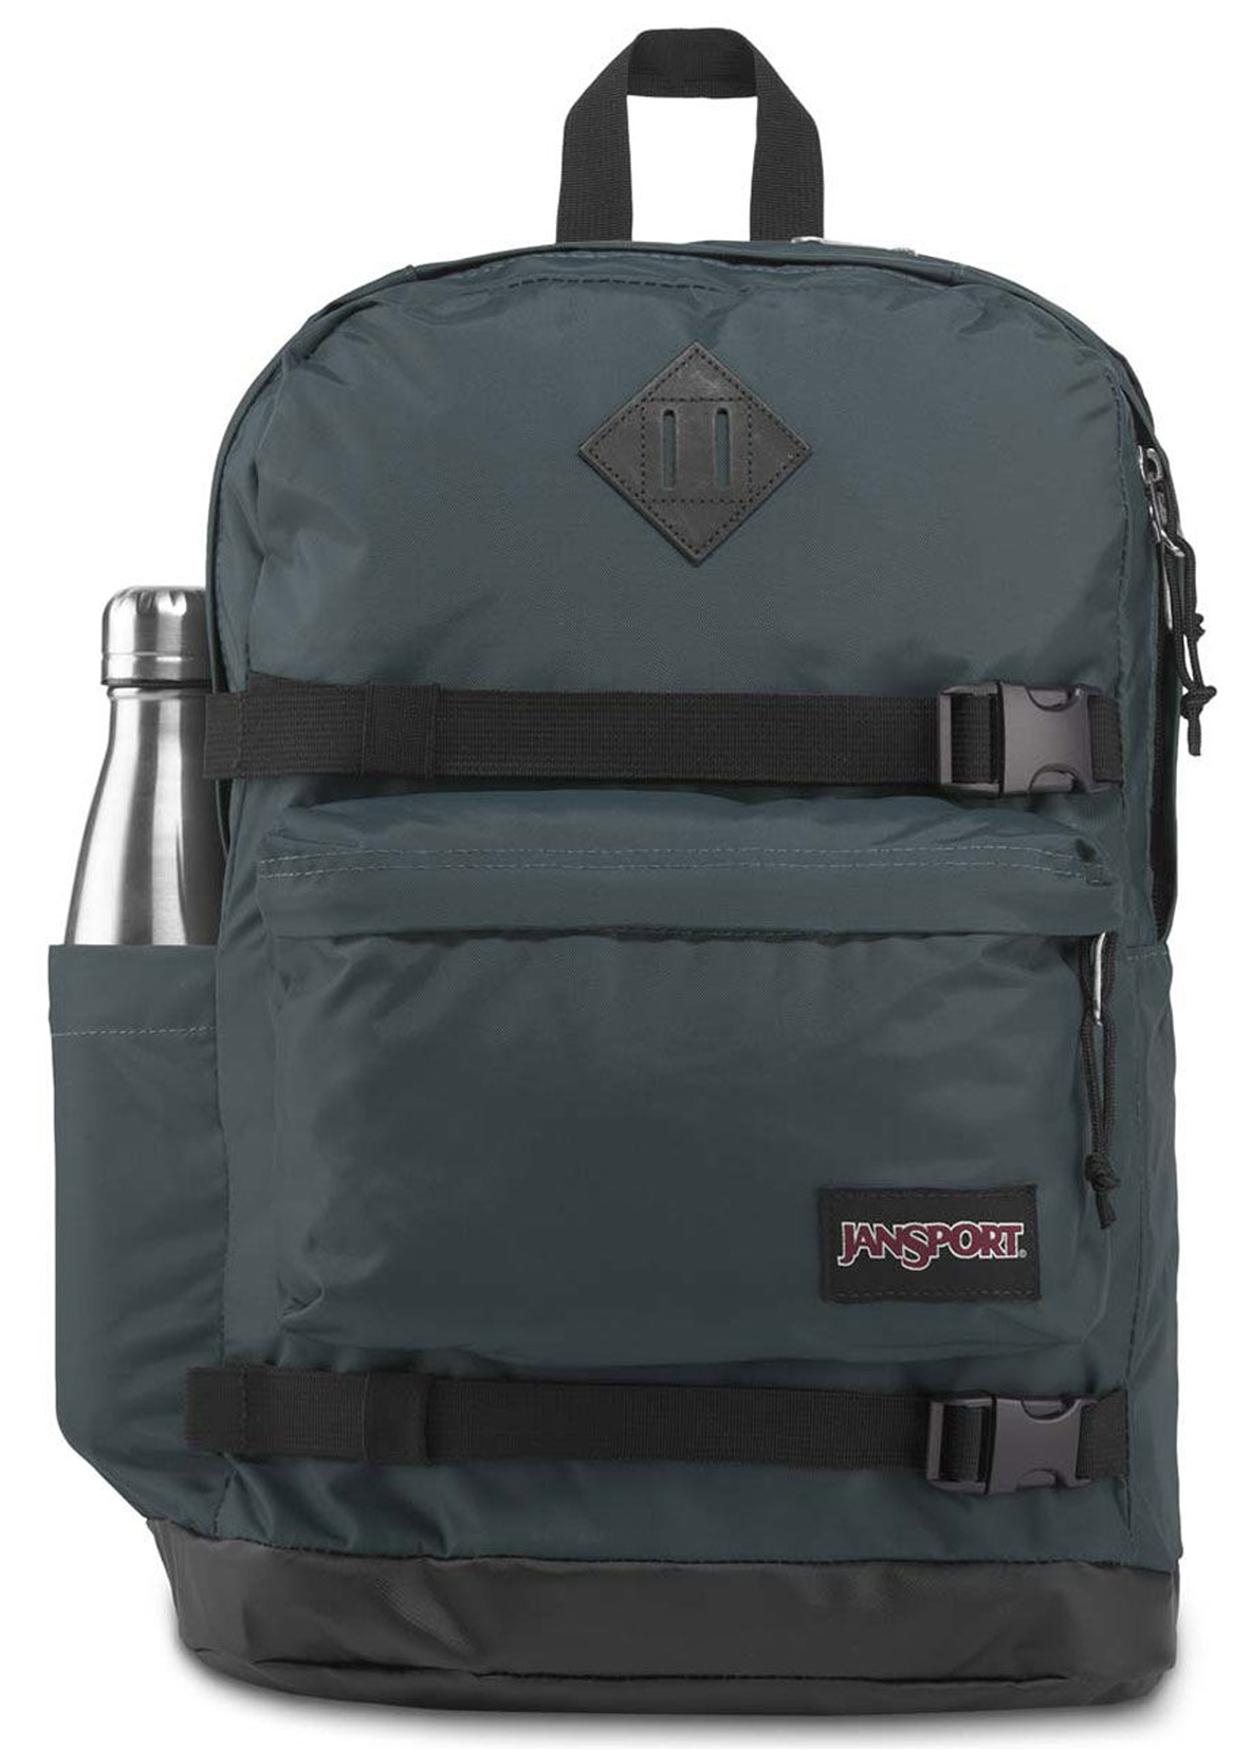 Jansport West Break Backpack | Brands,Backpacks,Jansport,Daypacks